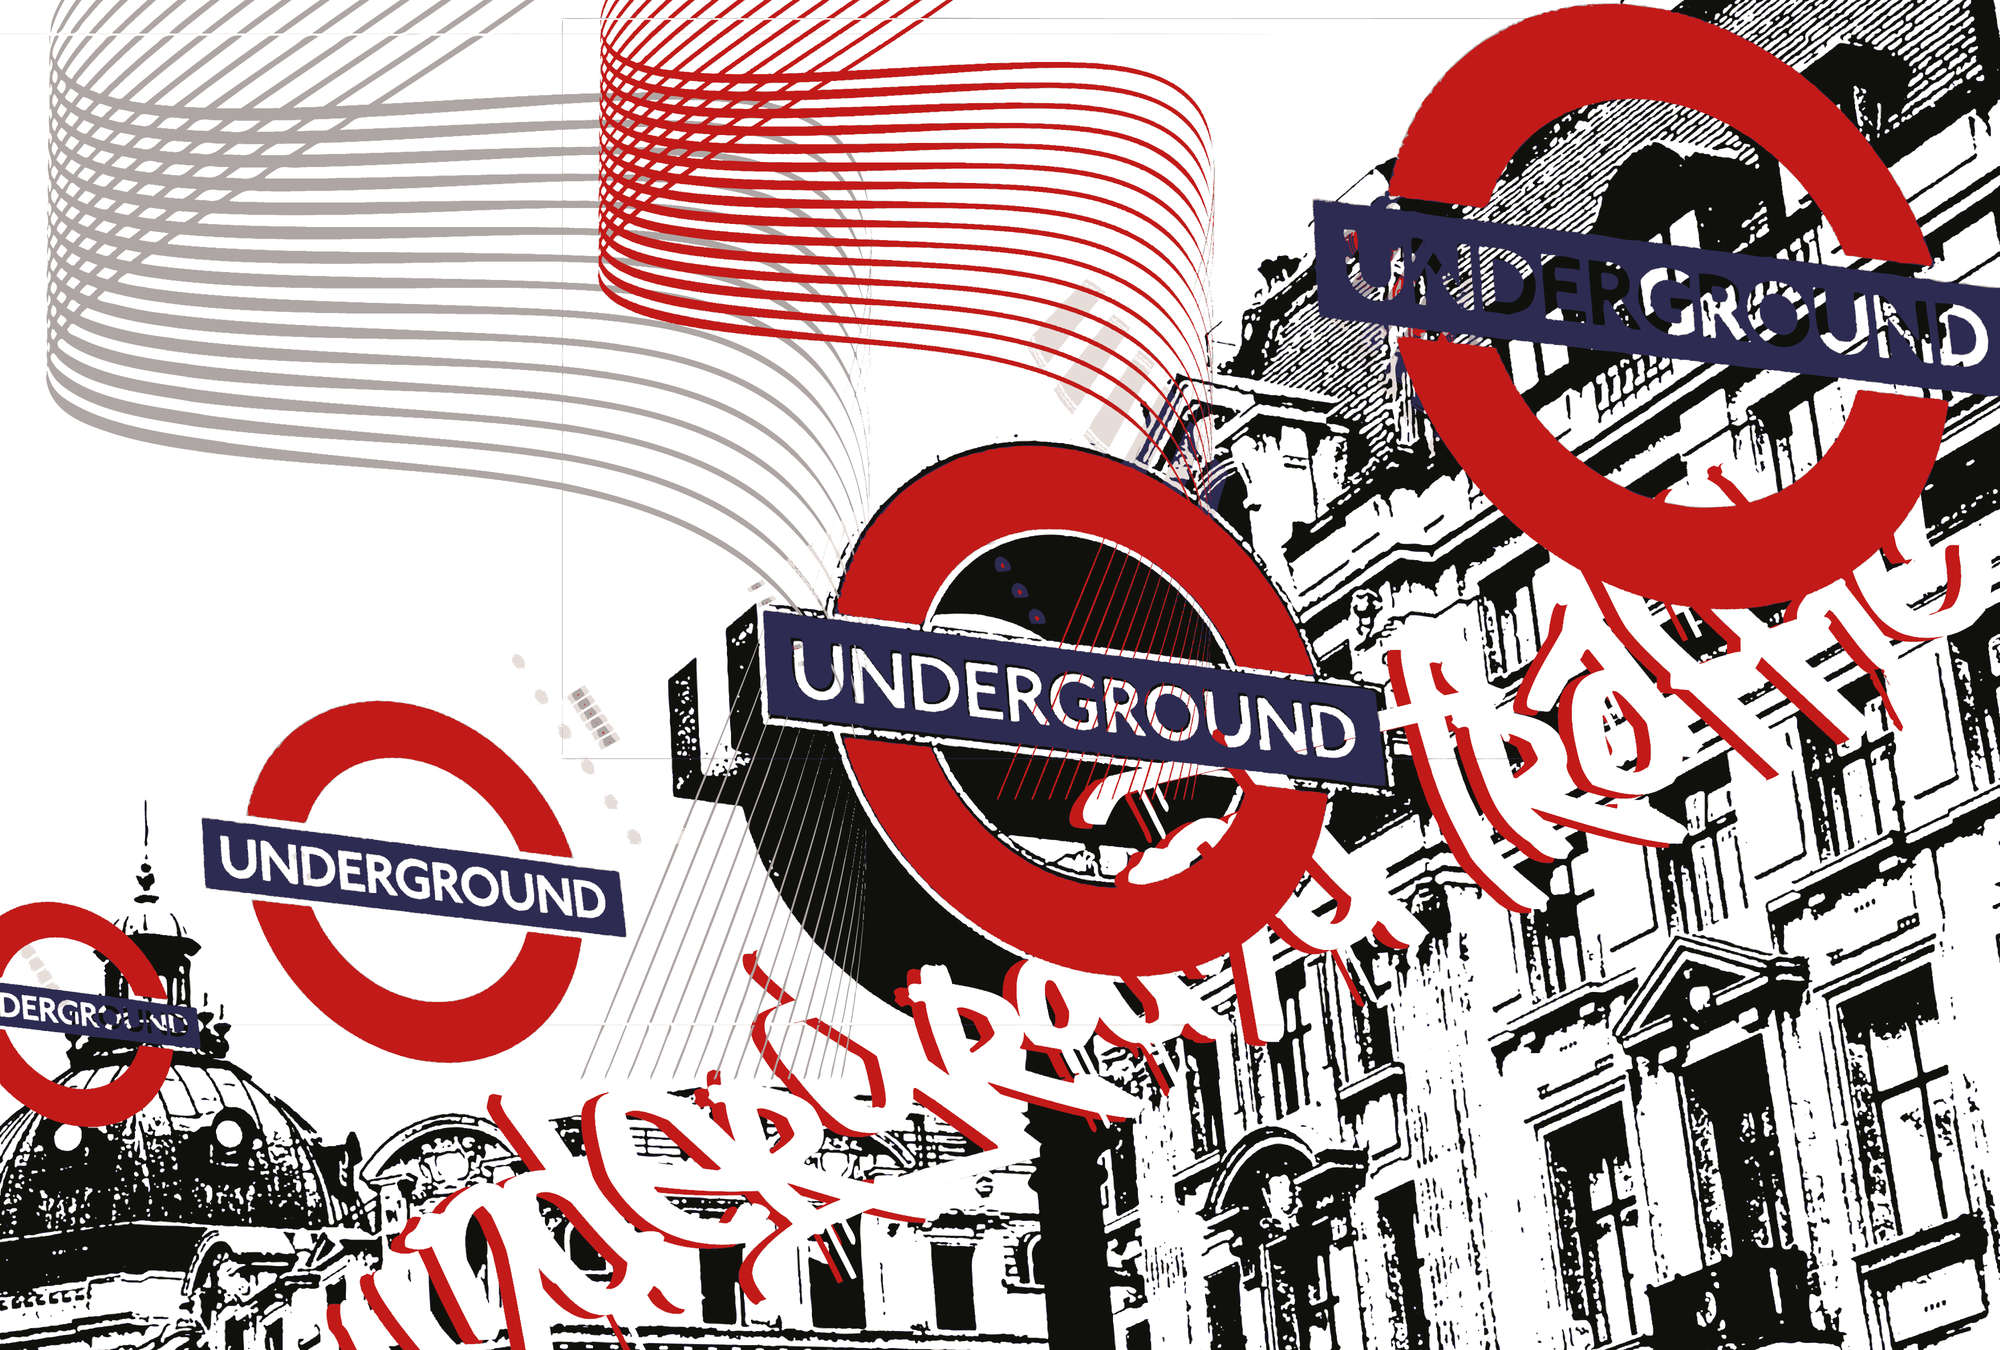             Underground - papier peint Londres Style, Urbain & Moderne
        